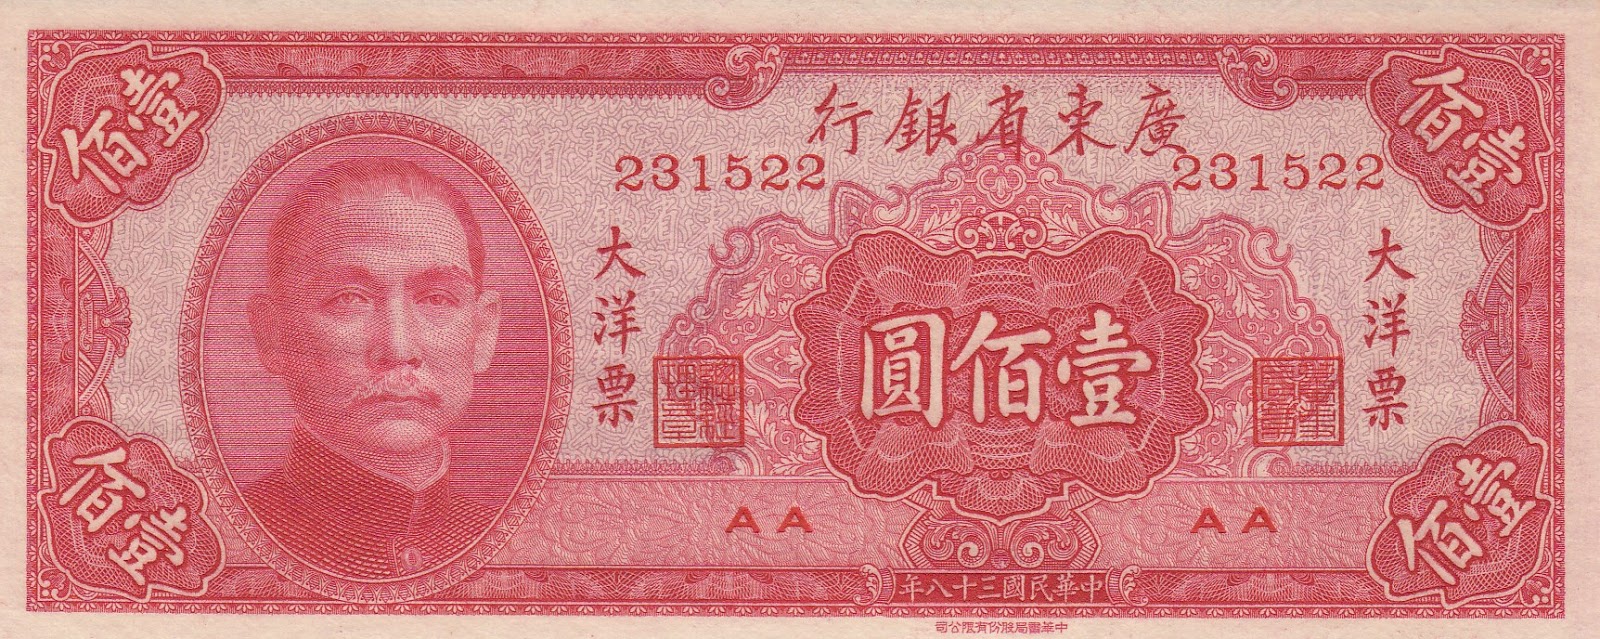 Китайские деньги переводить в рубли. Китайские купюры. Бумажные деньги Китая. Китай 100 юаней. Китайская банкнота 1949.